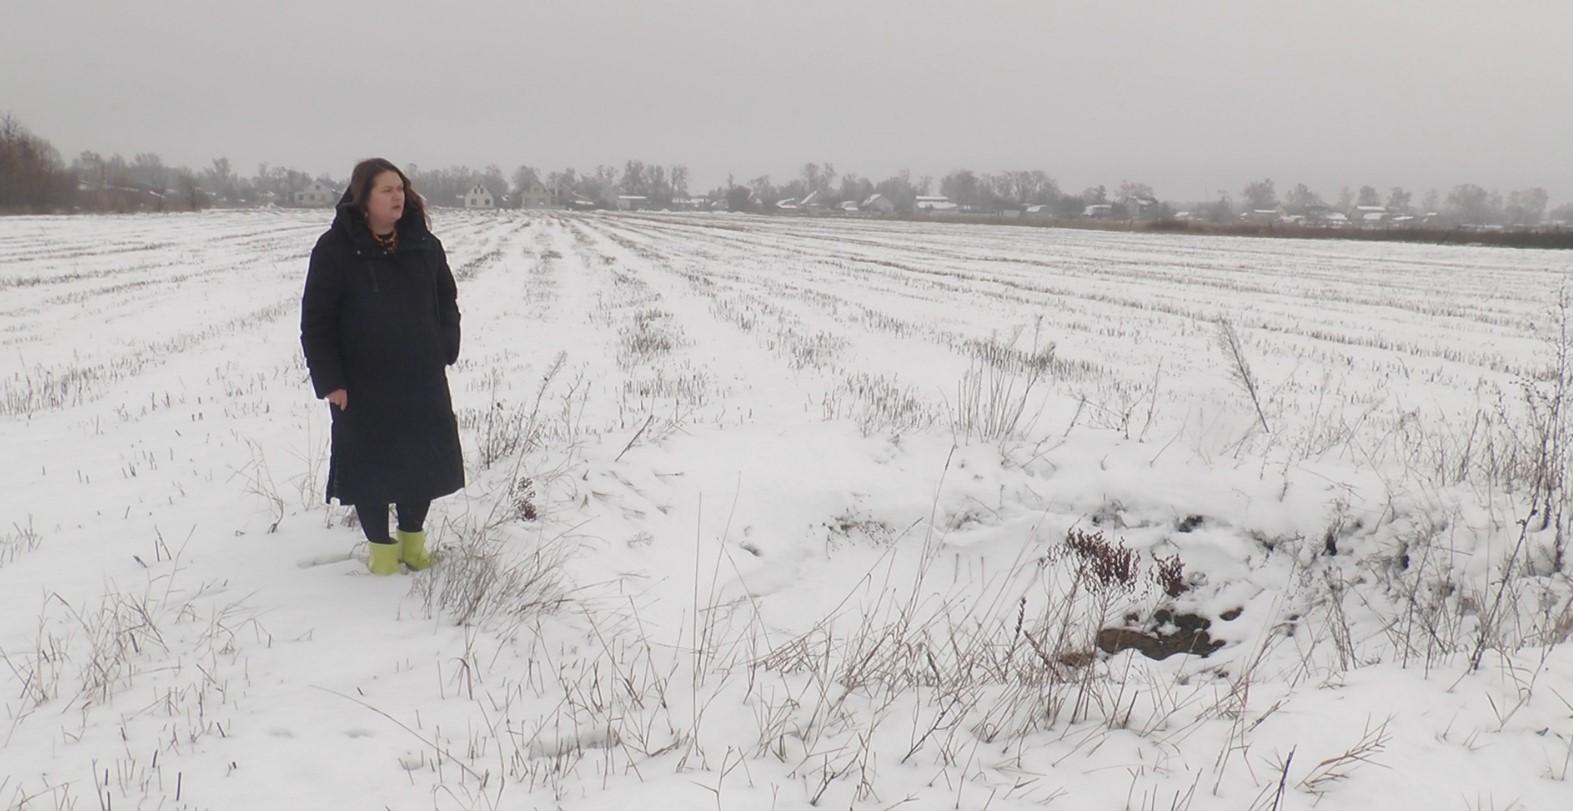 Тетяна Шанойло стоїть поруч з вирвою на полі, на якому її родина вже кілька років вирощує гречку та жито. Зараз її масштаби приховав сніг